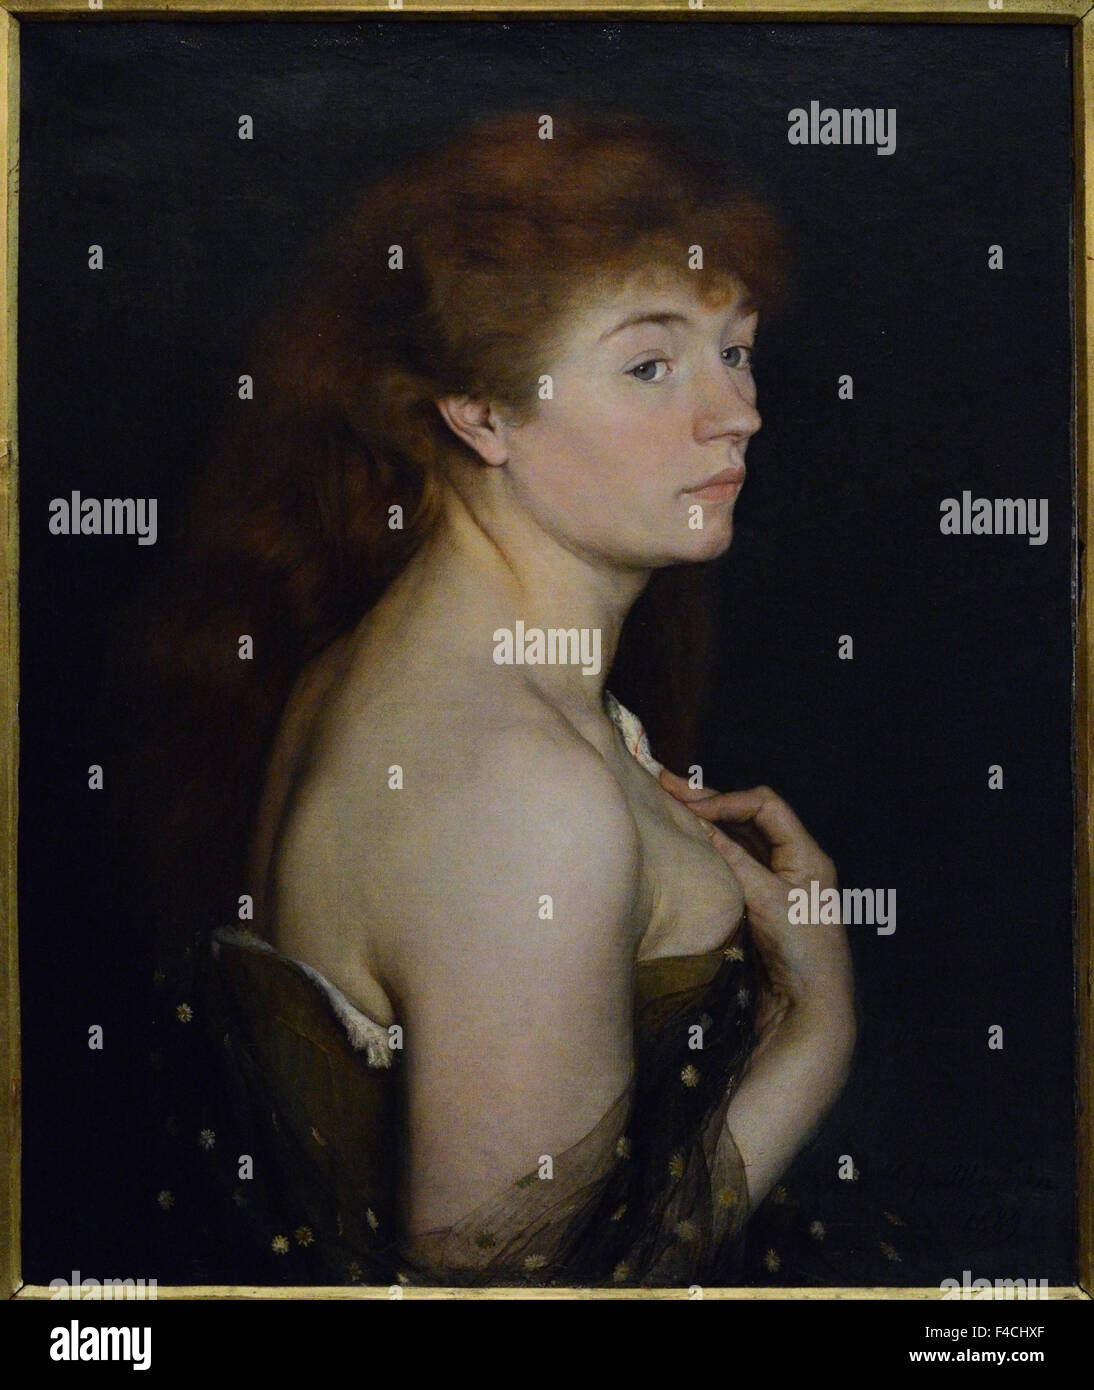 Charles Maurin - Portrait de jeune femme rousse - 1889 - Orsay Museum - Paris Stock Photo